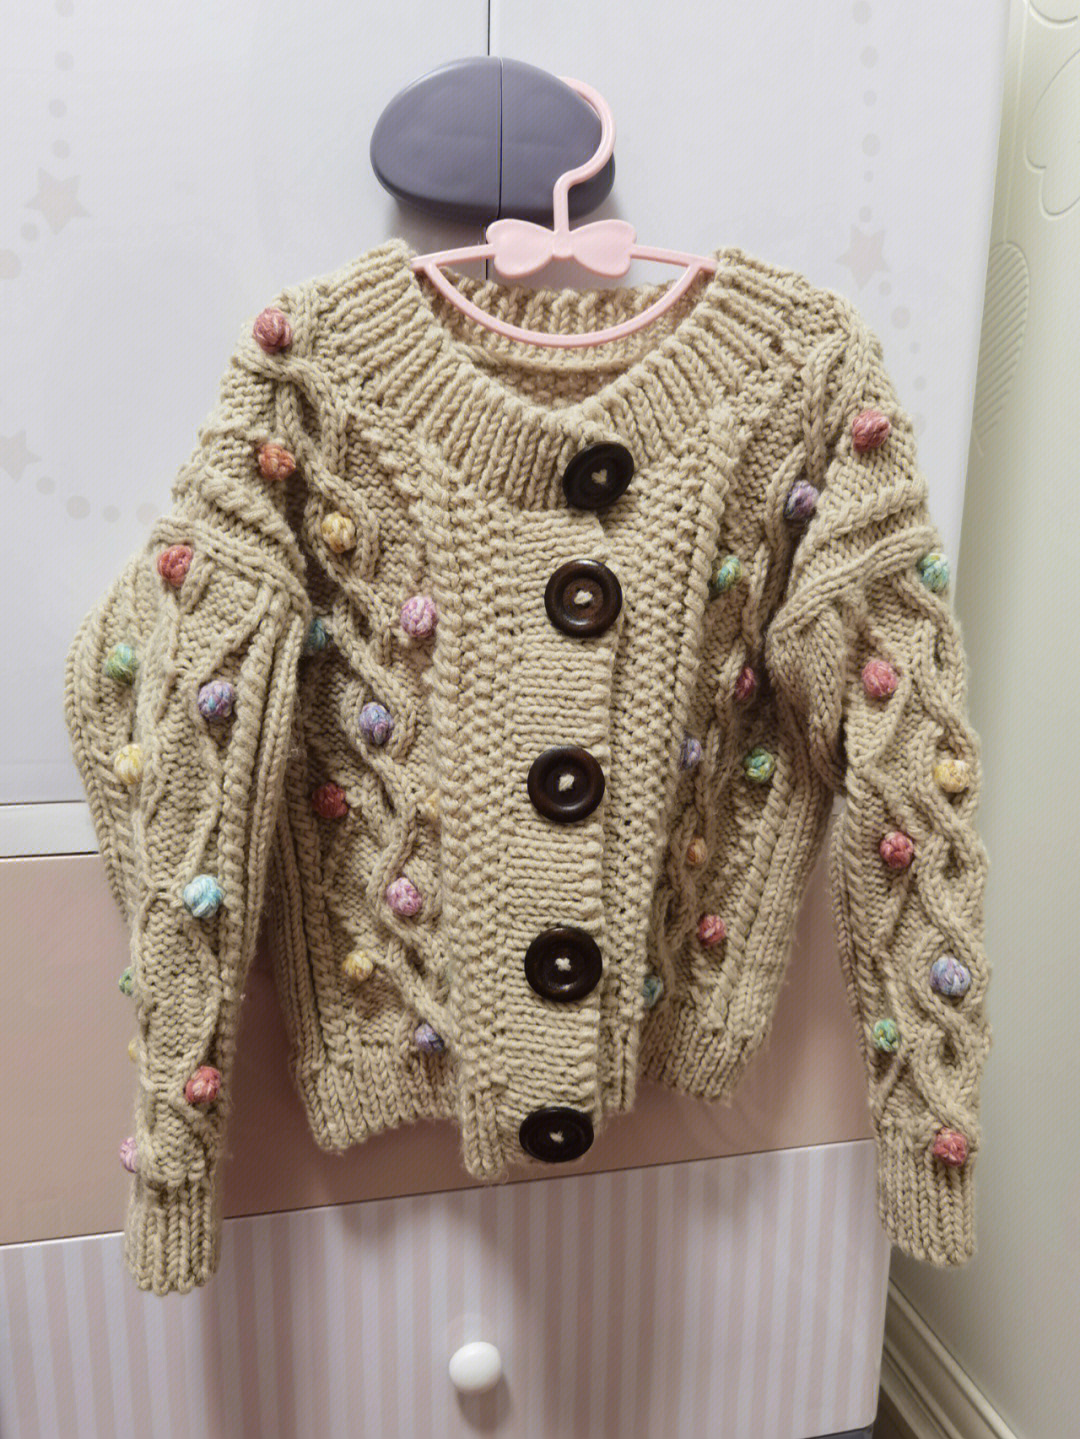 3一4岁儿童毛衣编织法图片